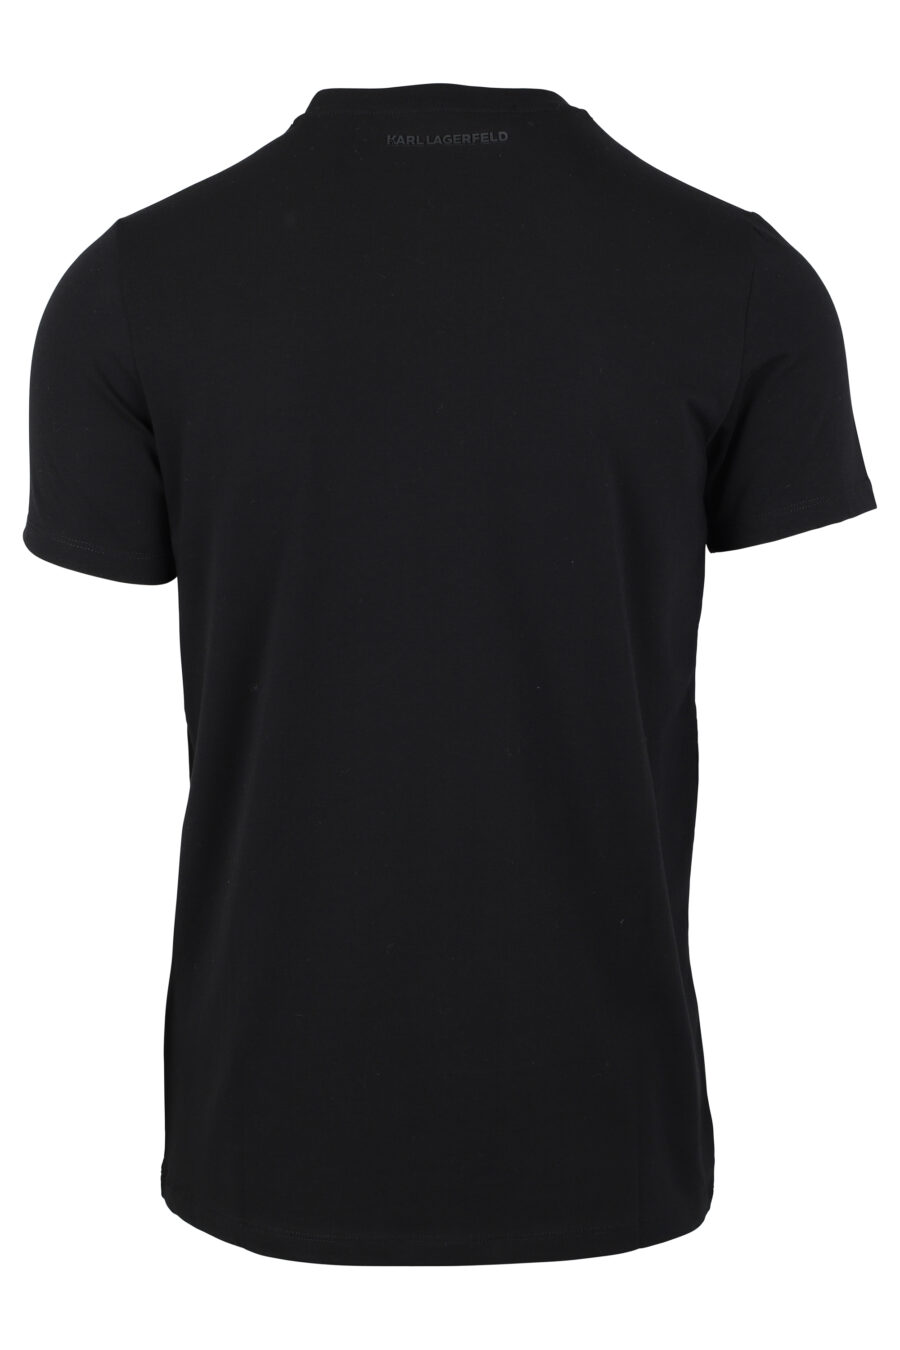 Camiseta negra con maxilogo "karl" en silueta naranja - IMG 4693